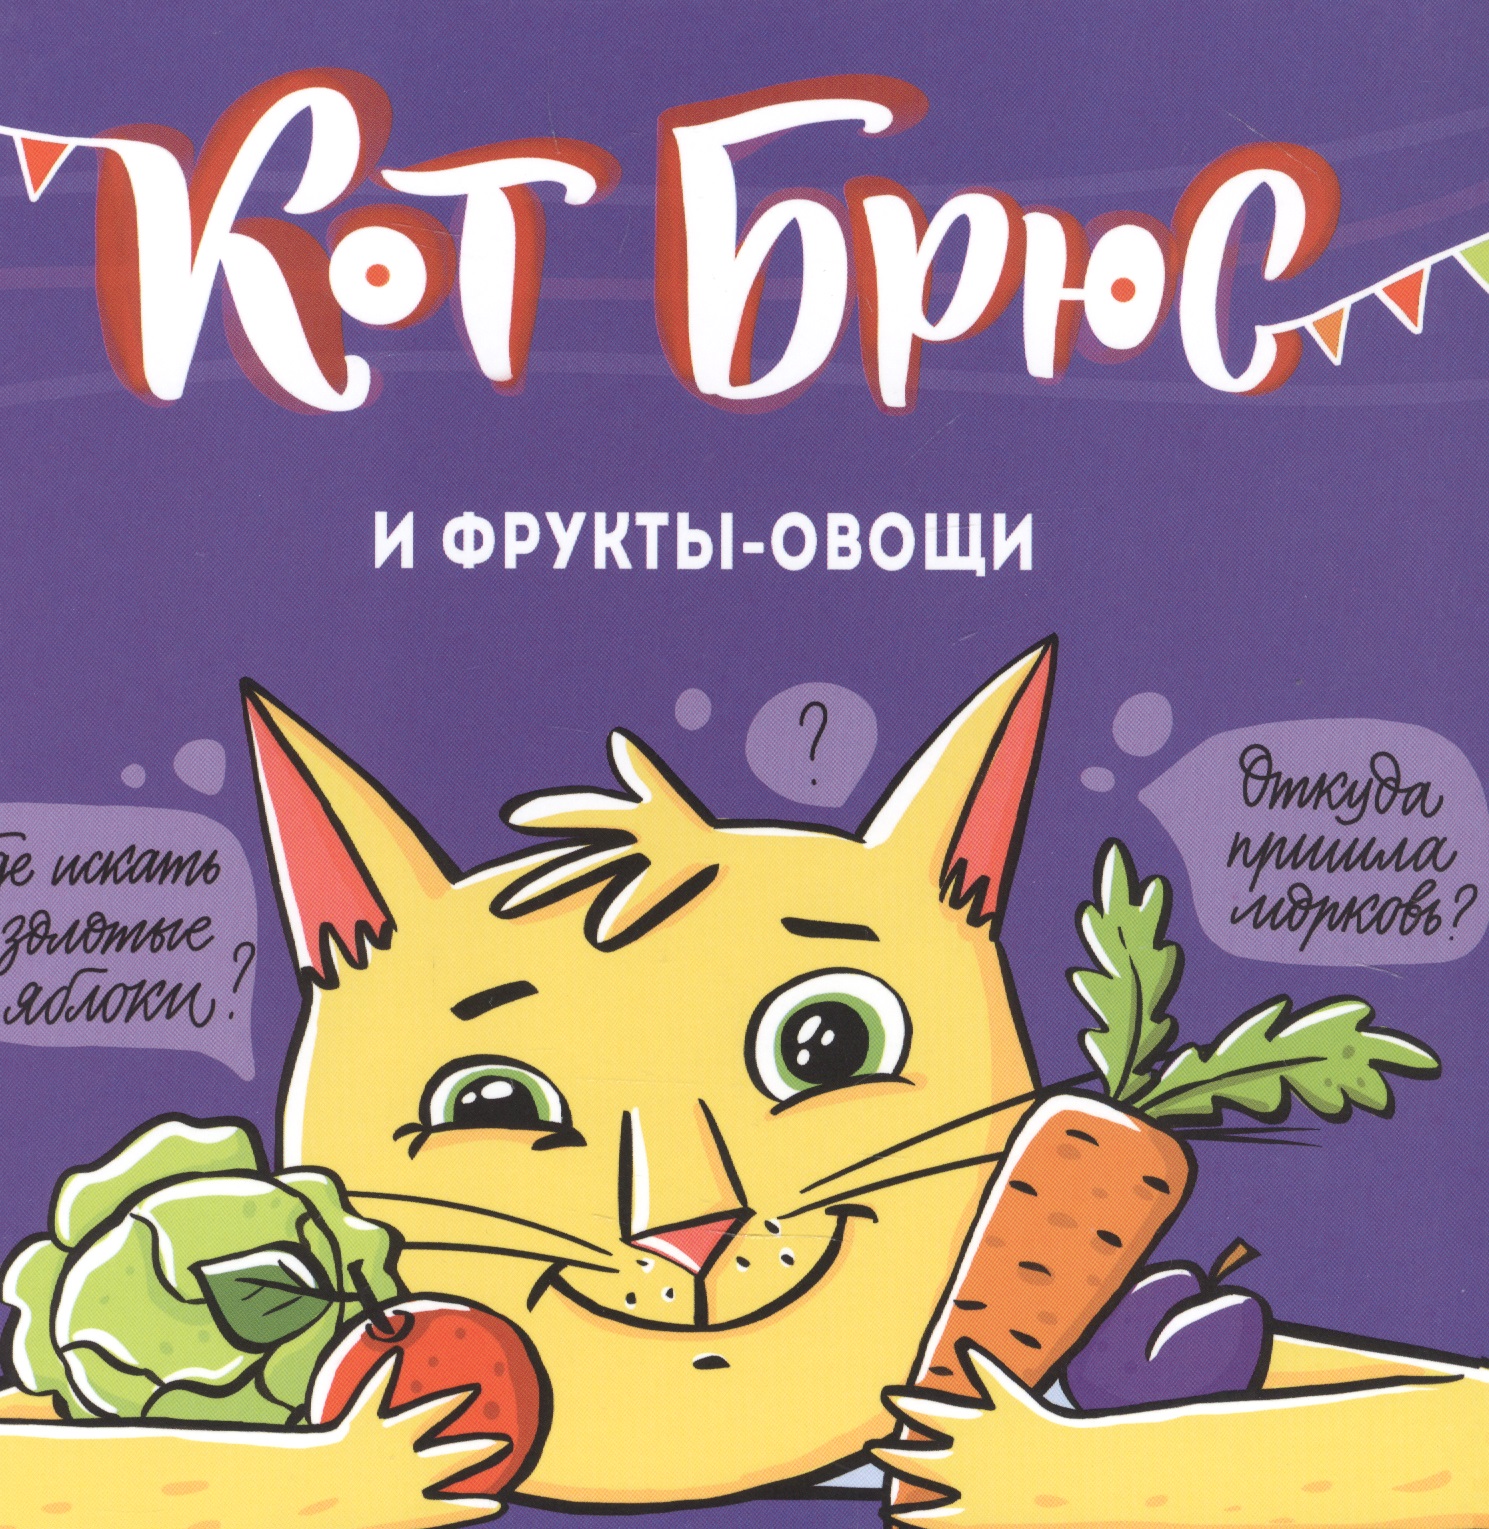 Егорова София Евгеньевна Кот Брюс и фрукты-овощи егорова с кот брюс и фрукты овощи